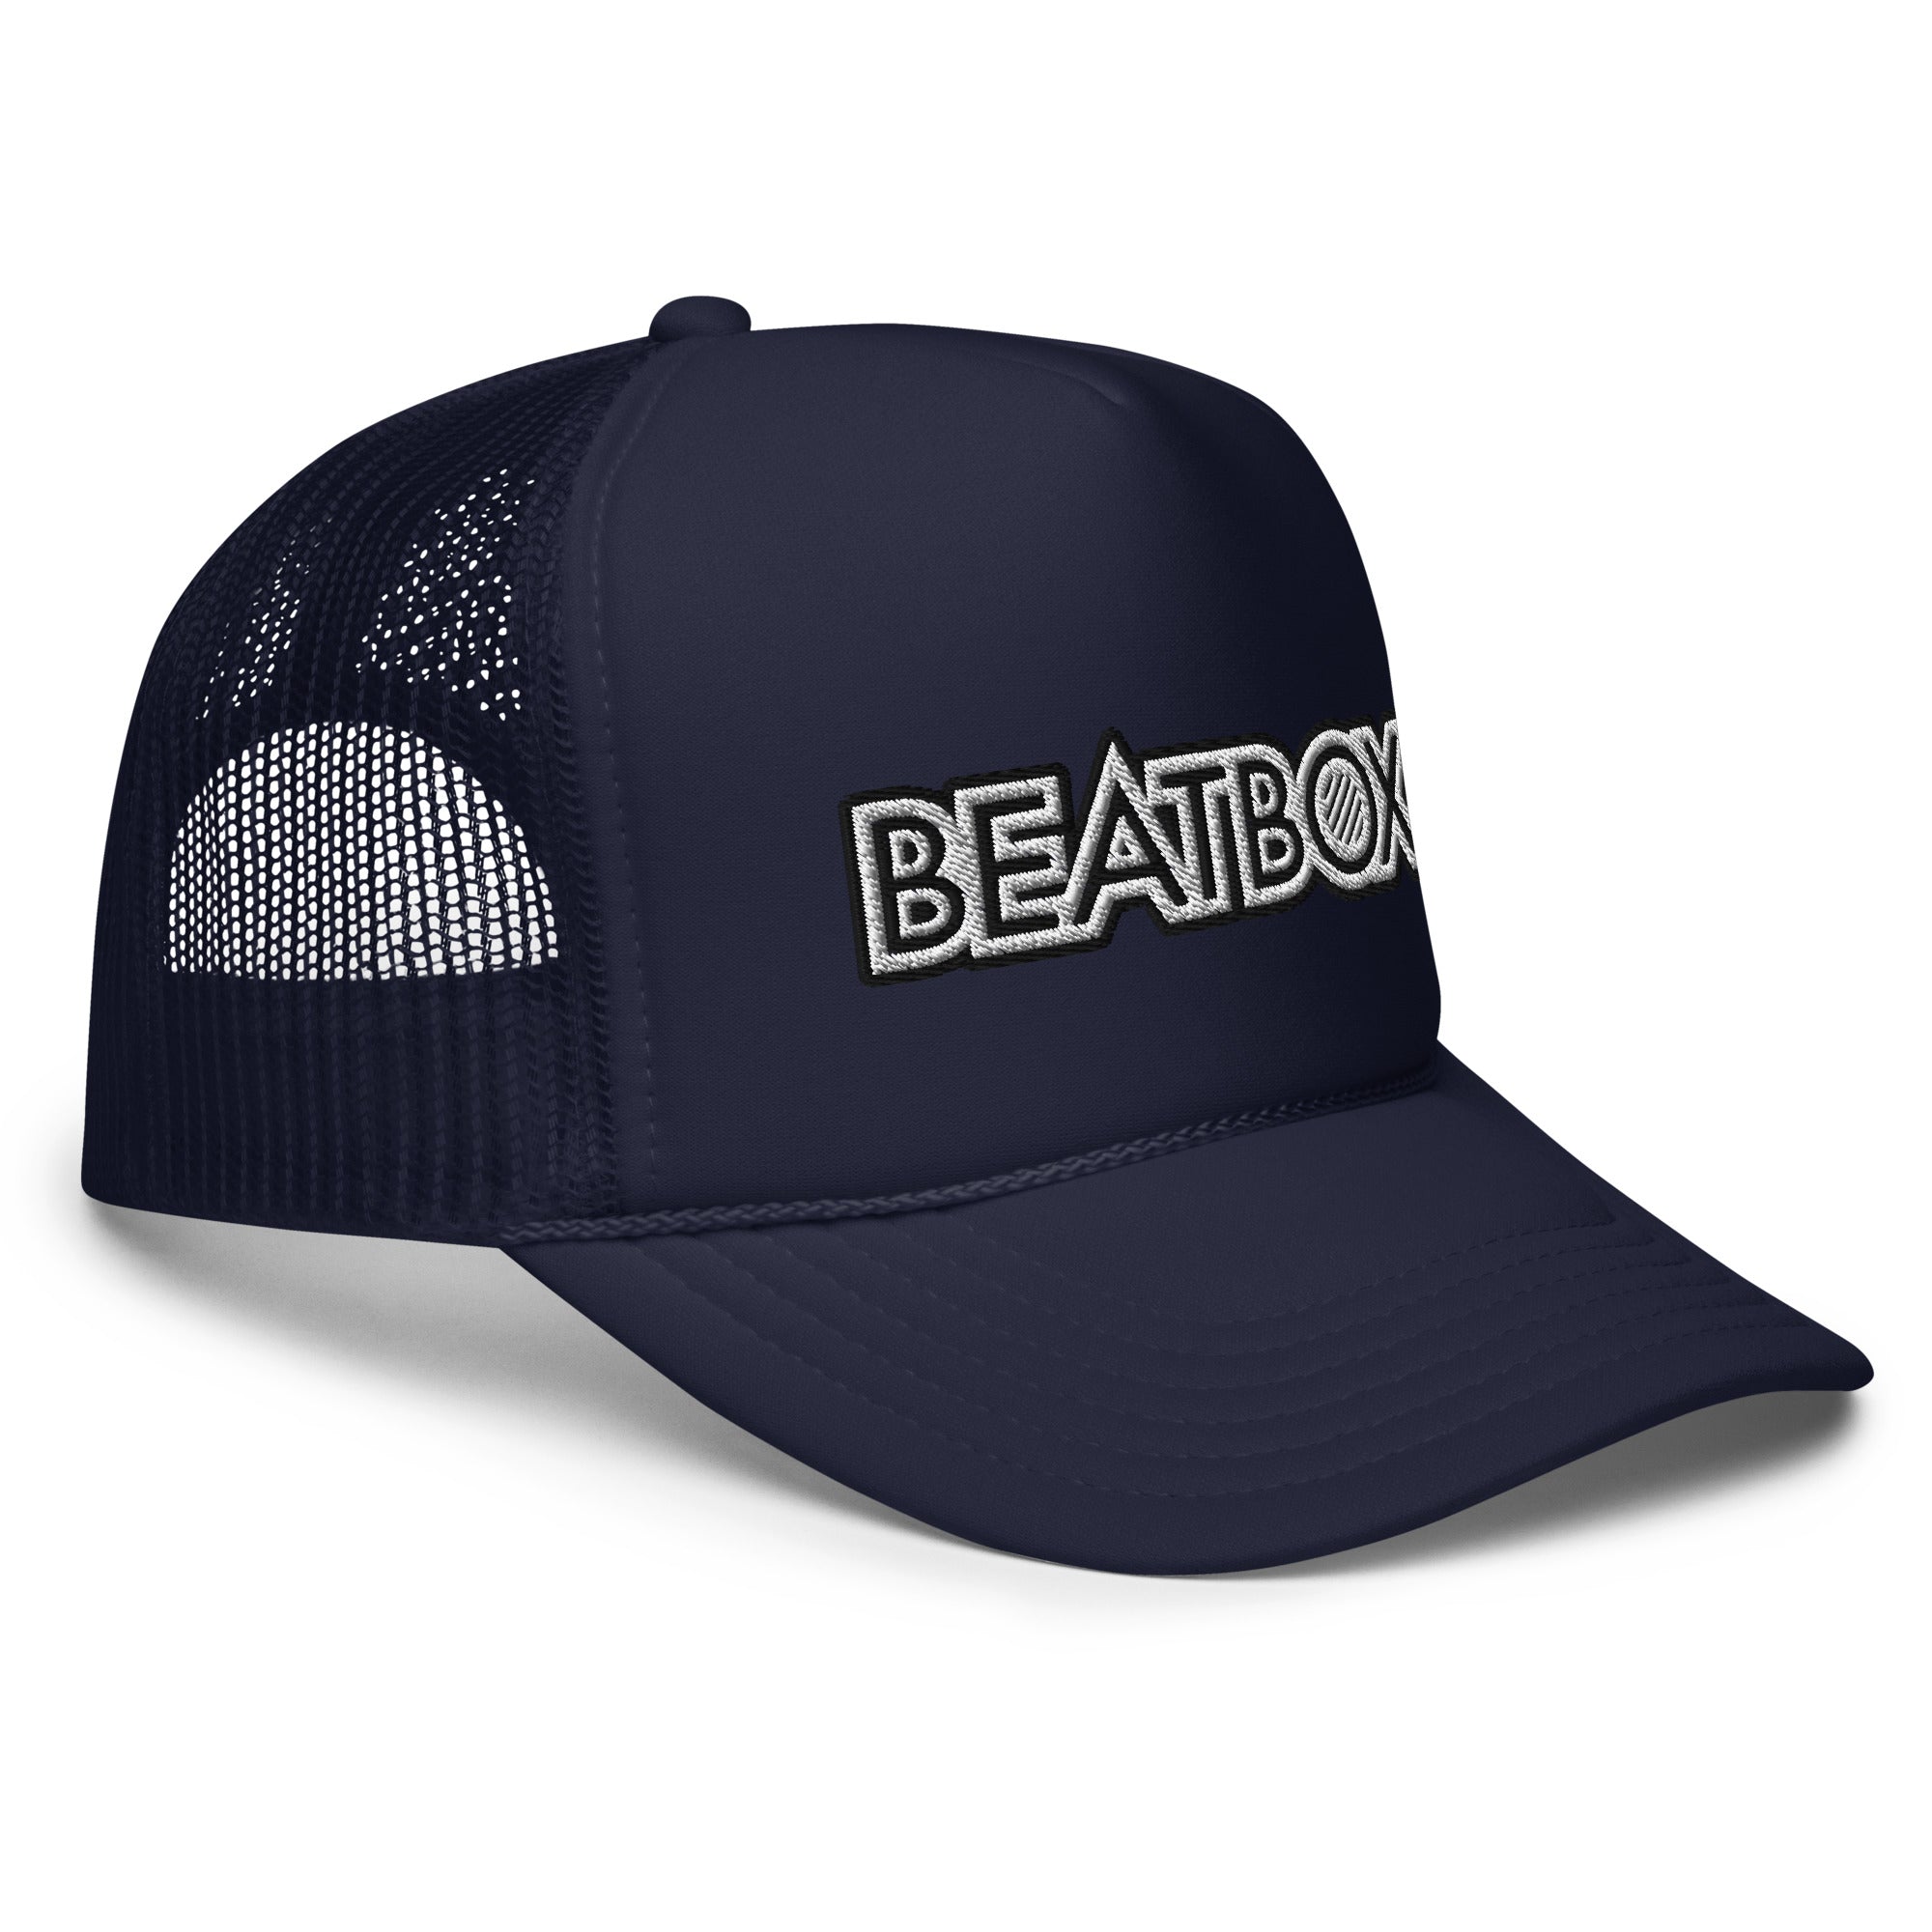 BeatBox Foam trucker hat